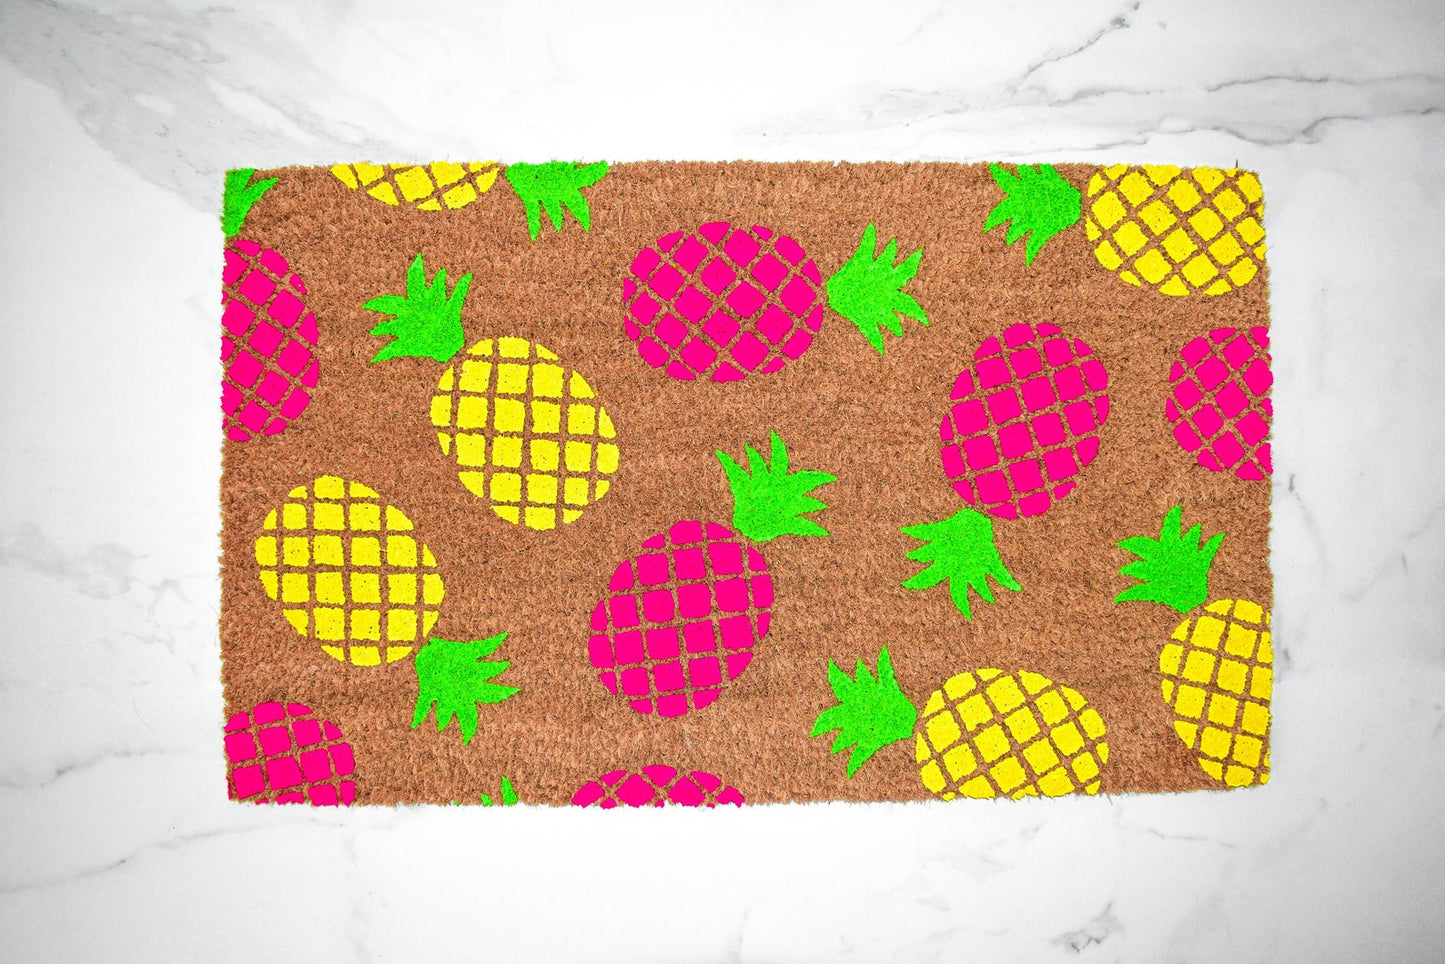 Pineapple Doormat